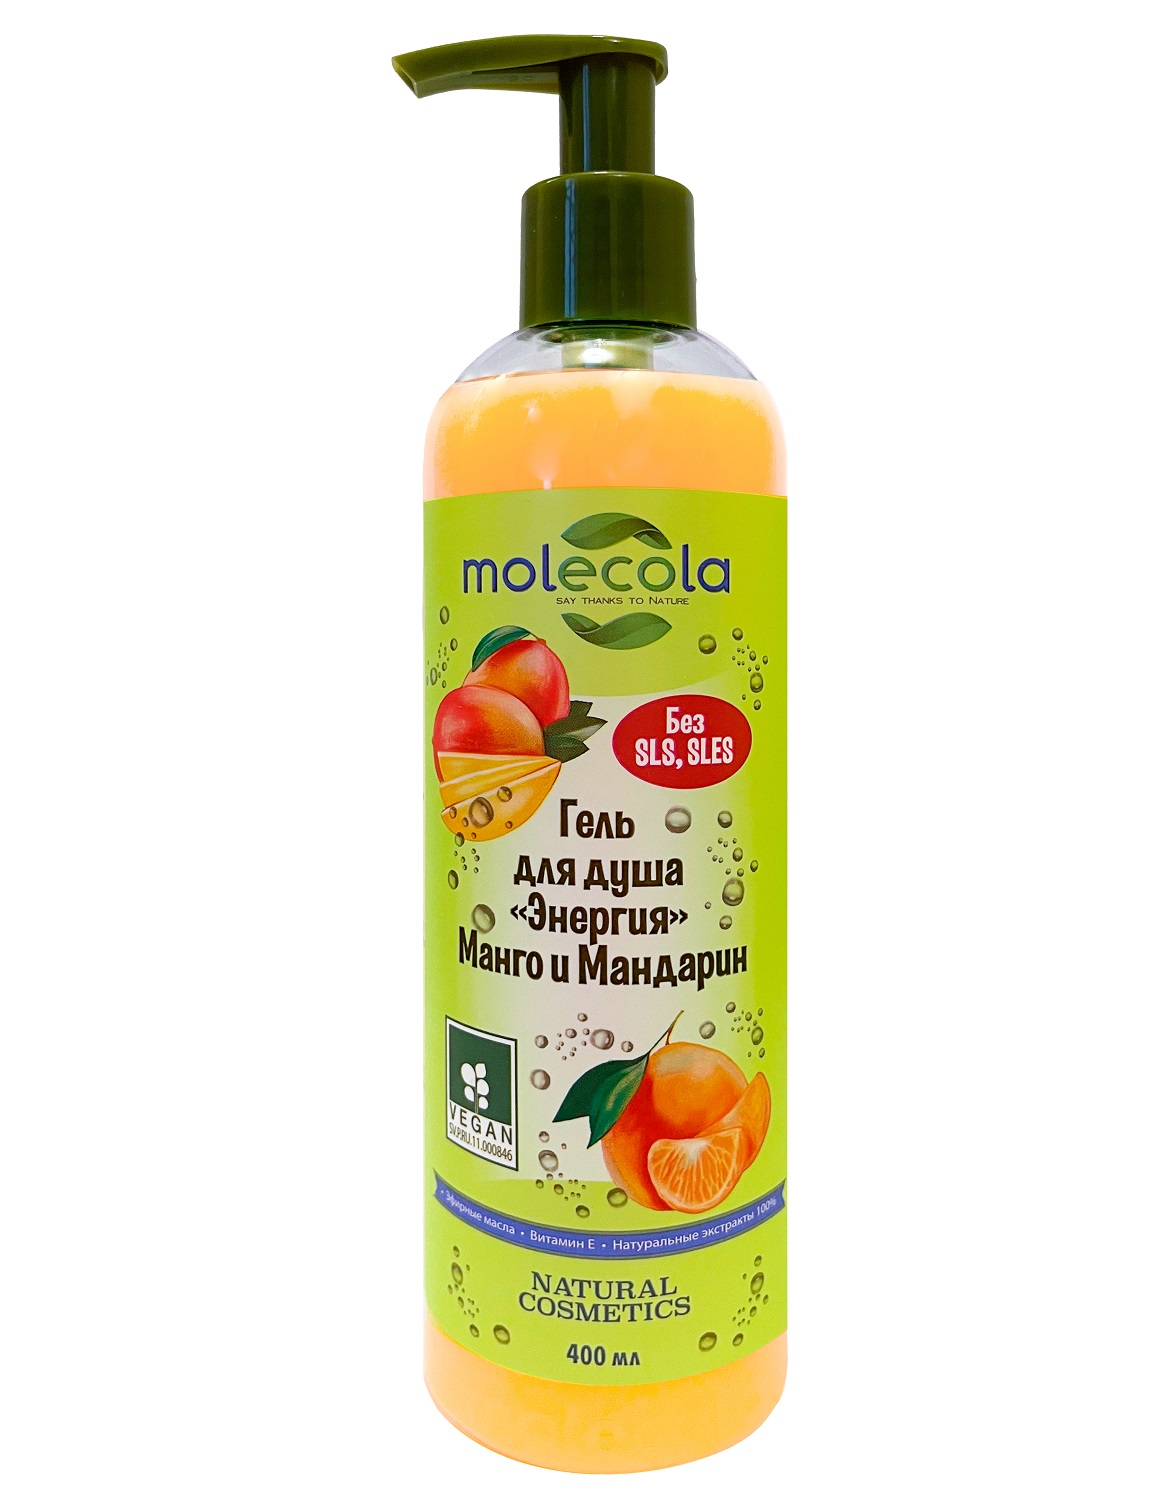 Molecola Гель для душа «Энергия» с манго и мандарином, 400 мл (Molecola, Для душа и ванны)